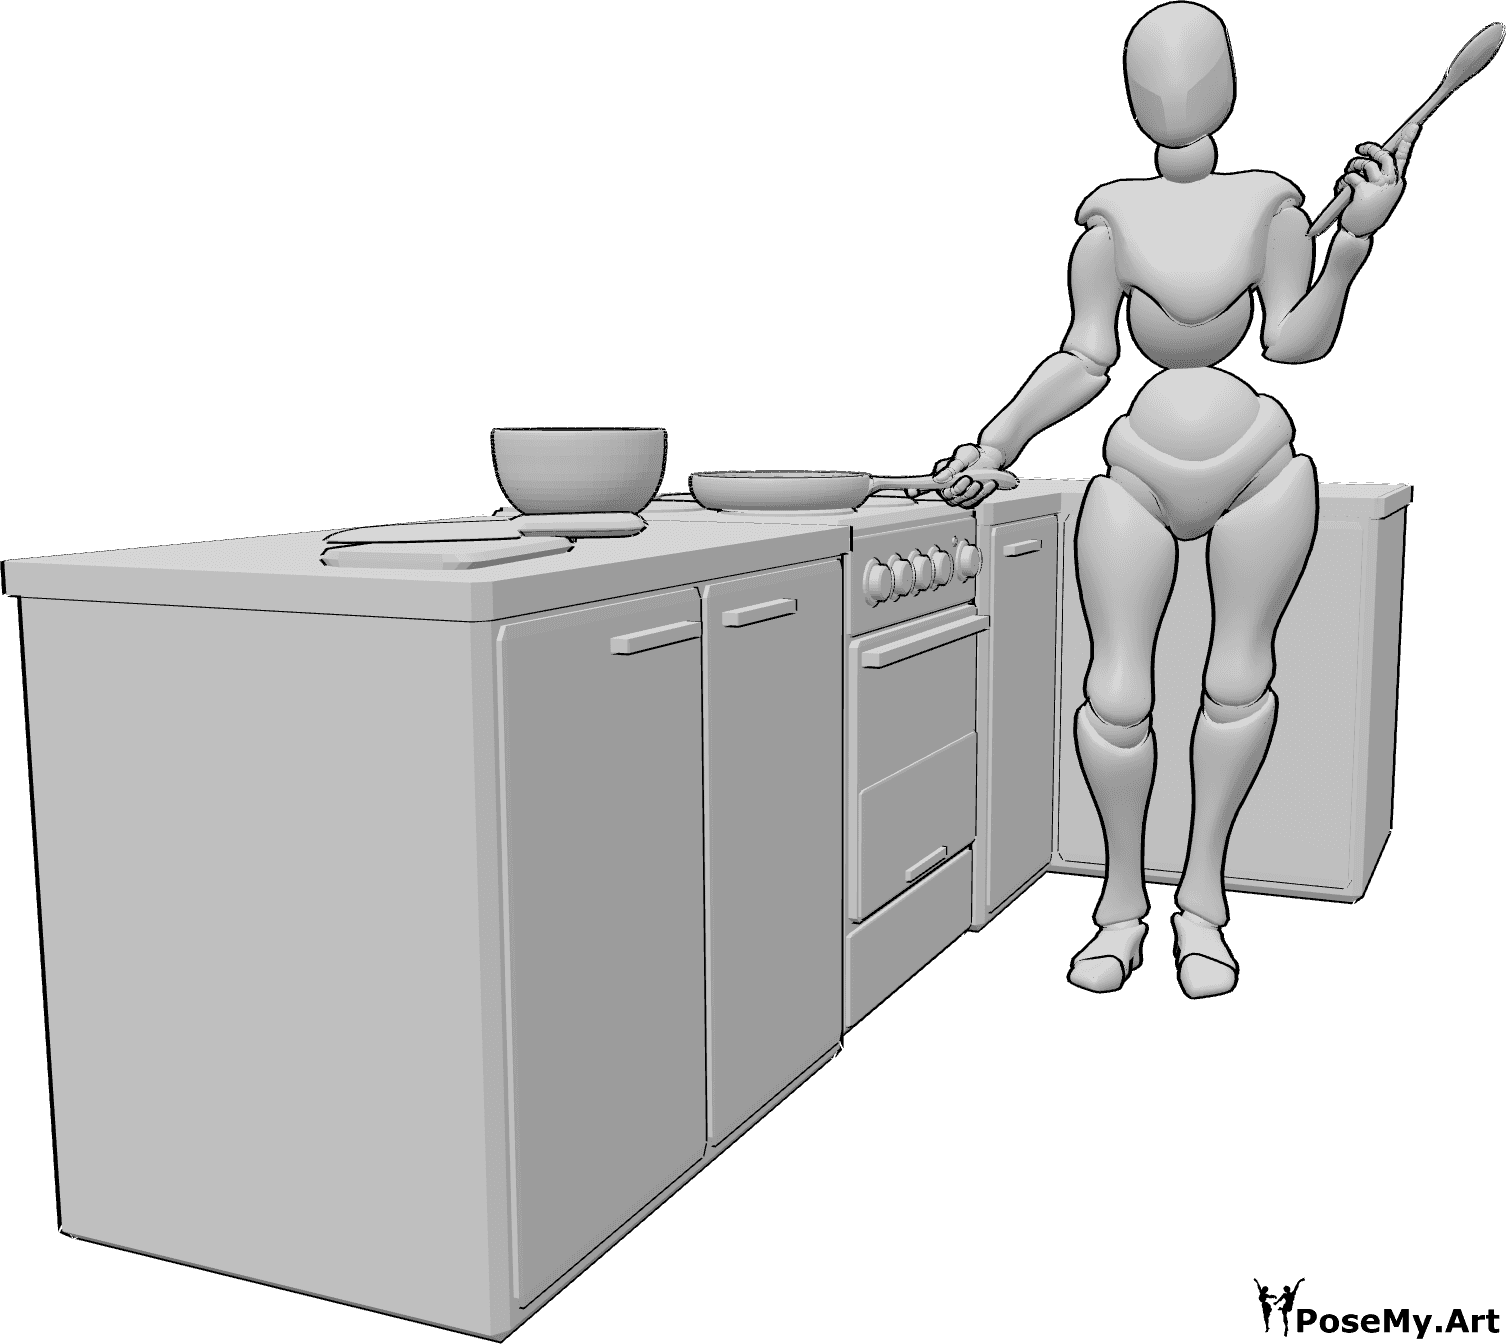 Referencia de poses- Postura de cocinero con cuchara - Mujer de pie en la cocina, con una sartén en la mano derecha y una cuchara de madera en la izquierda.